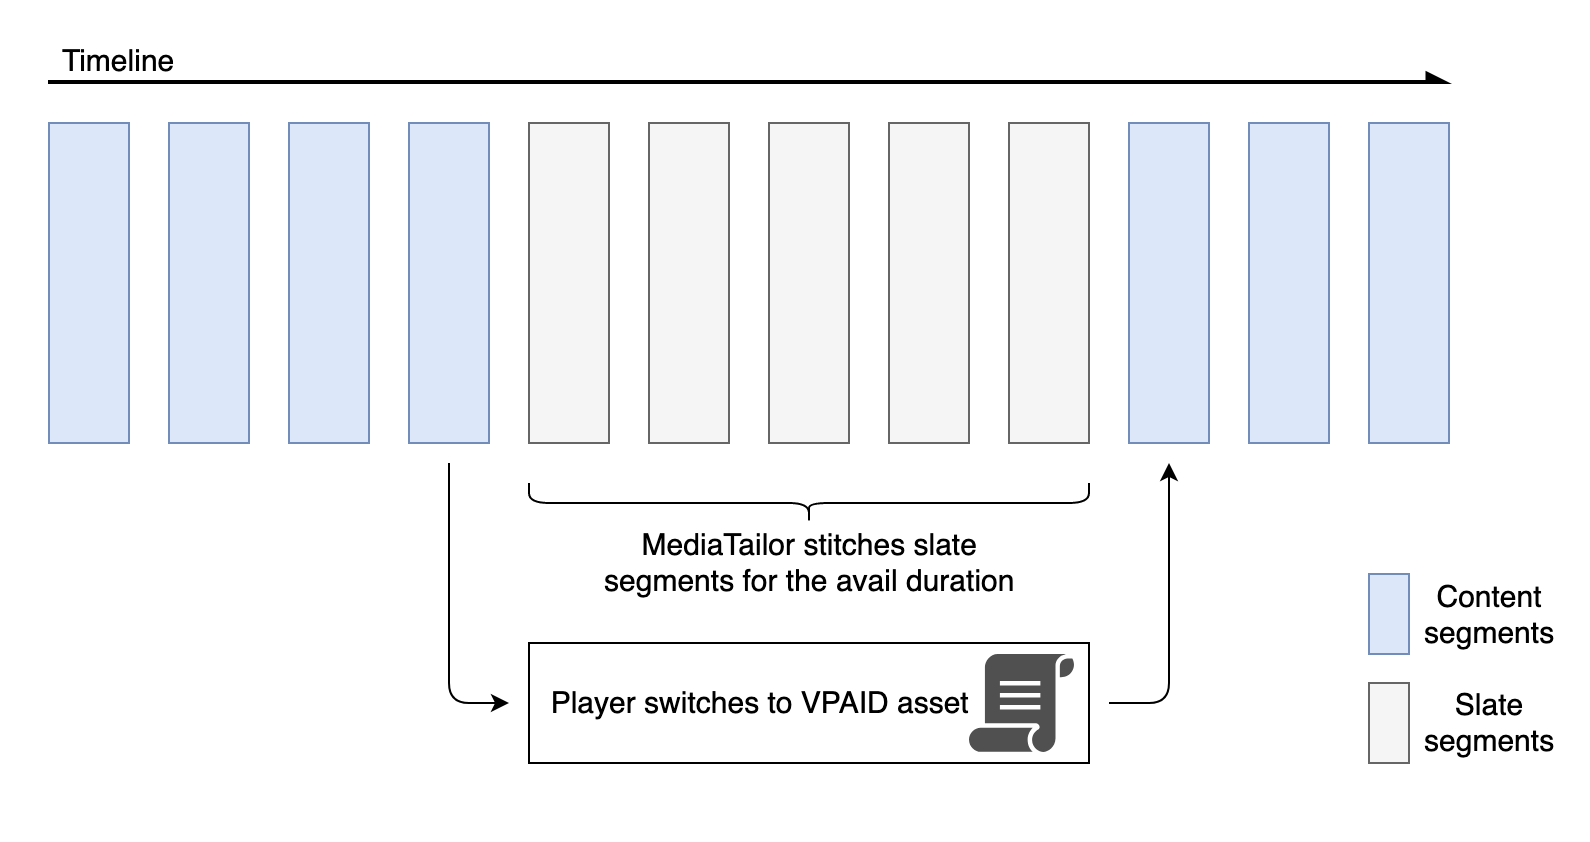 支付廣告播放圖。 MediaTailor 針對內容時間軸中的可用期間縫合平板區段。在可用期間內，播放器切換到 VPADE 資產。